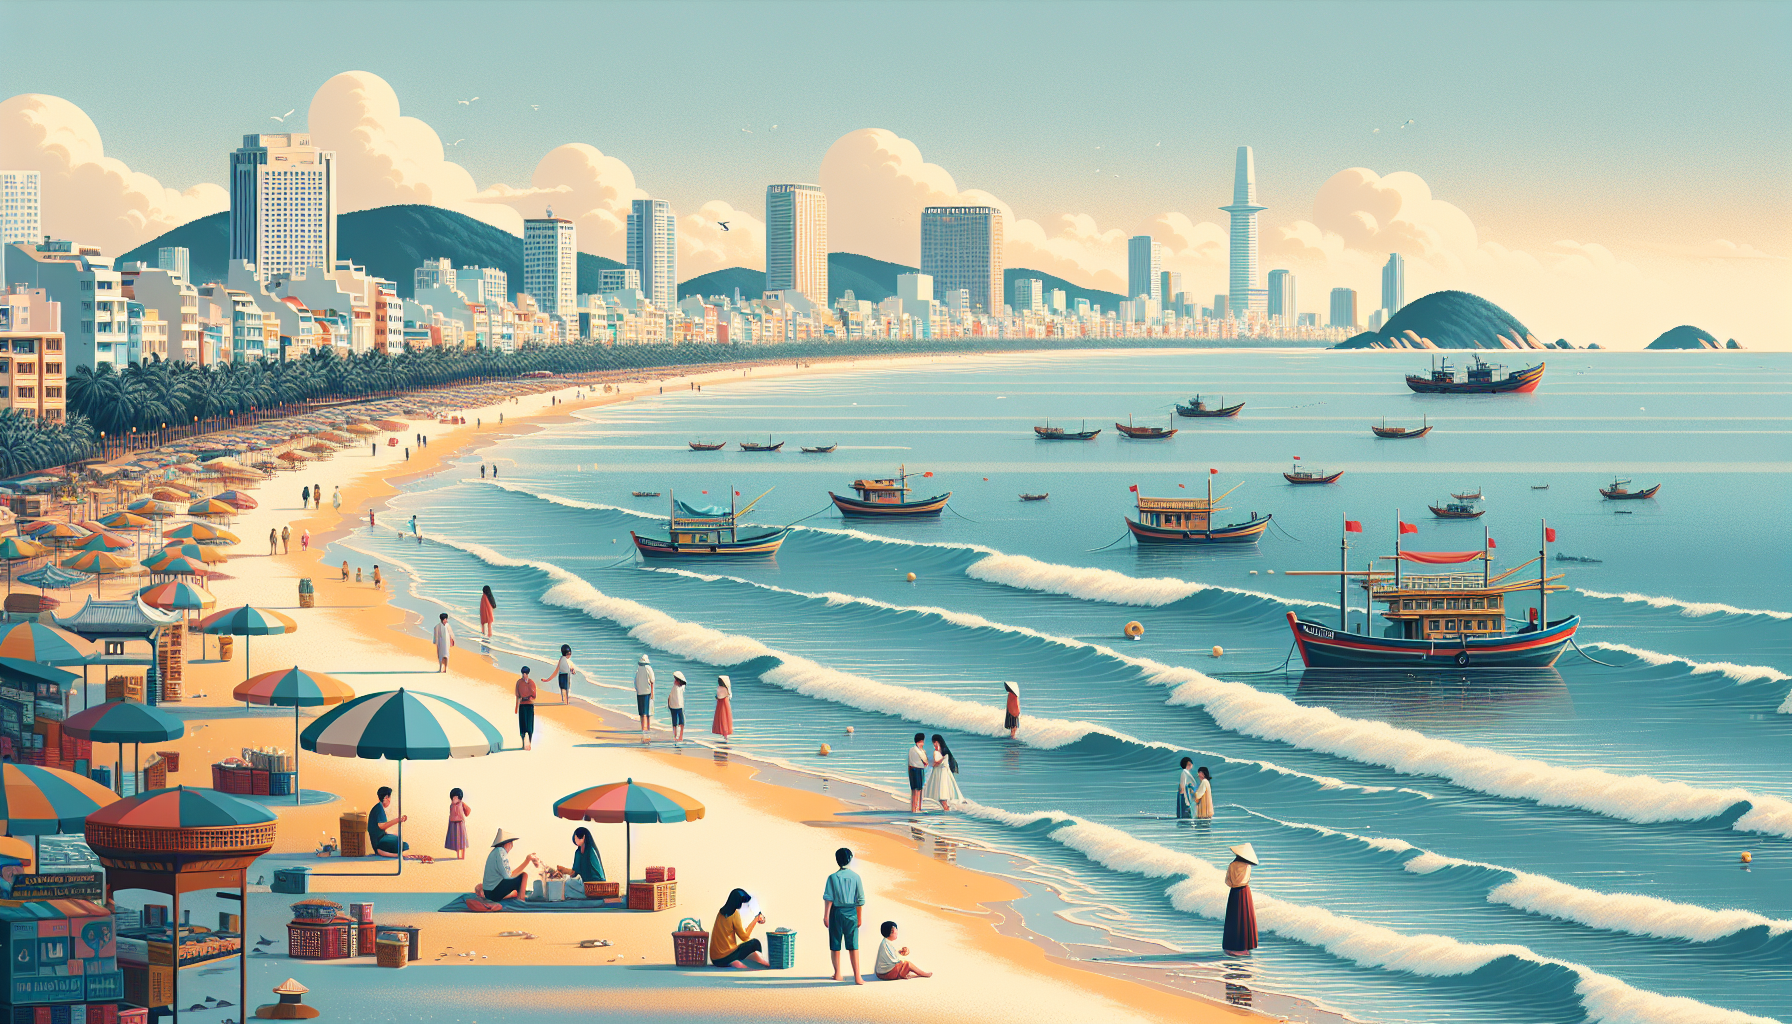 Nằm cách thành phố Hồ Chí Minh khoảng 125km về hướng Đông Nam, Vũng Tàu là một điểm đến hấp dẫn cho những người muốn tận hưởng không khí biển trong một chuyến du lịch ngắn ngày.